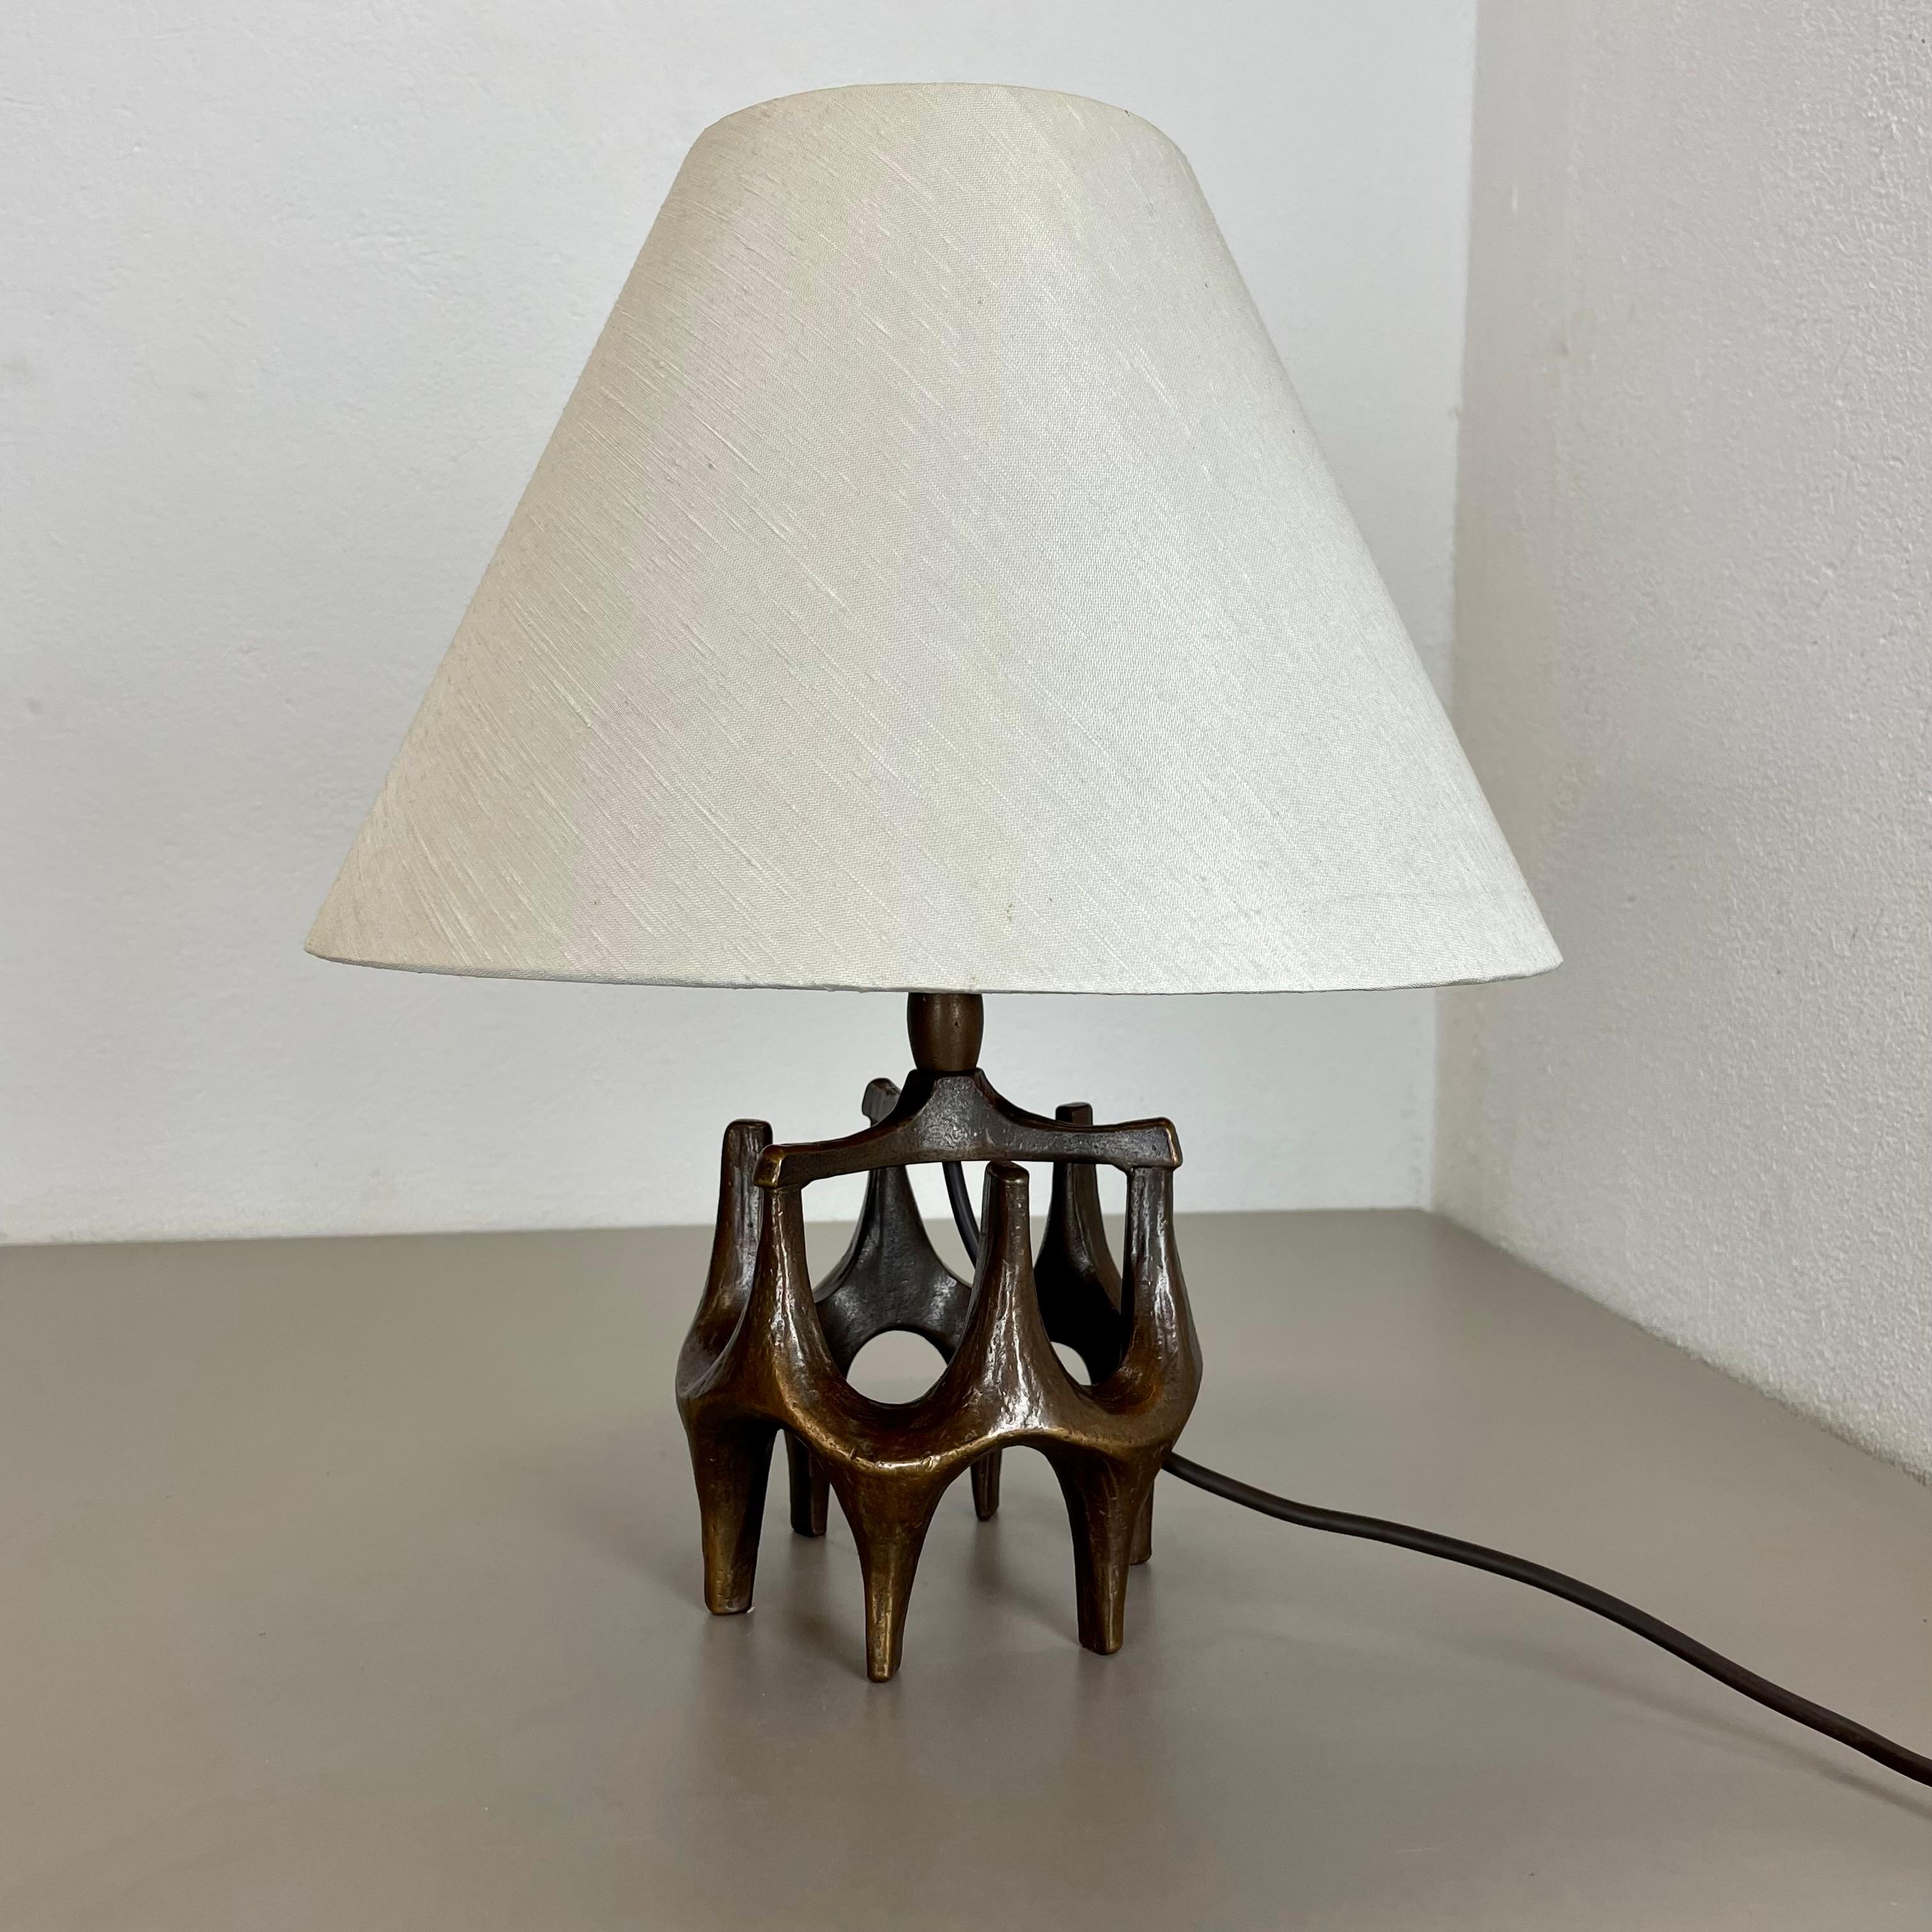 Article : Lampe de table brutaliste

Origine : Allemagne

Producteur du design : Michael Harjes

MATERIAL : bronze

Décennie : 1960s

Description : Cette lampe de table vintage originale, a été produite dans les années 1960 en Allemagne. Conçu et